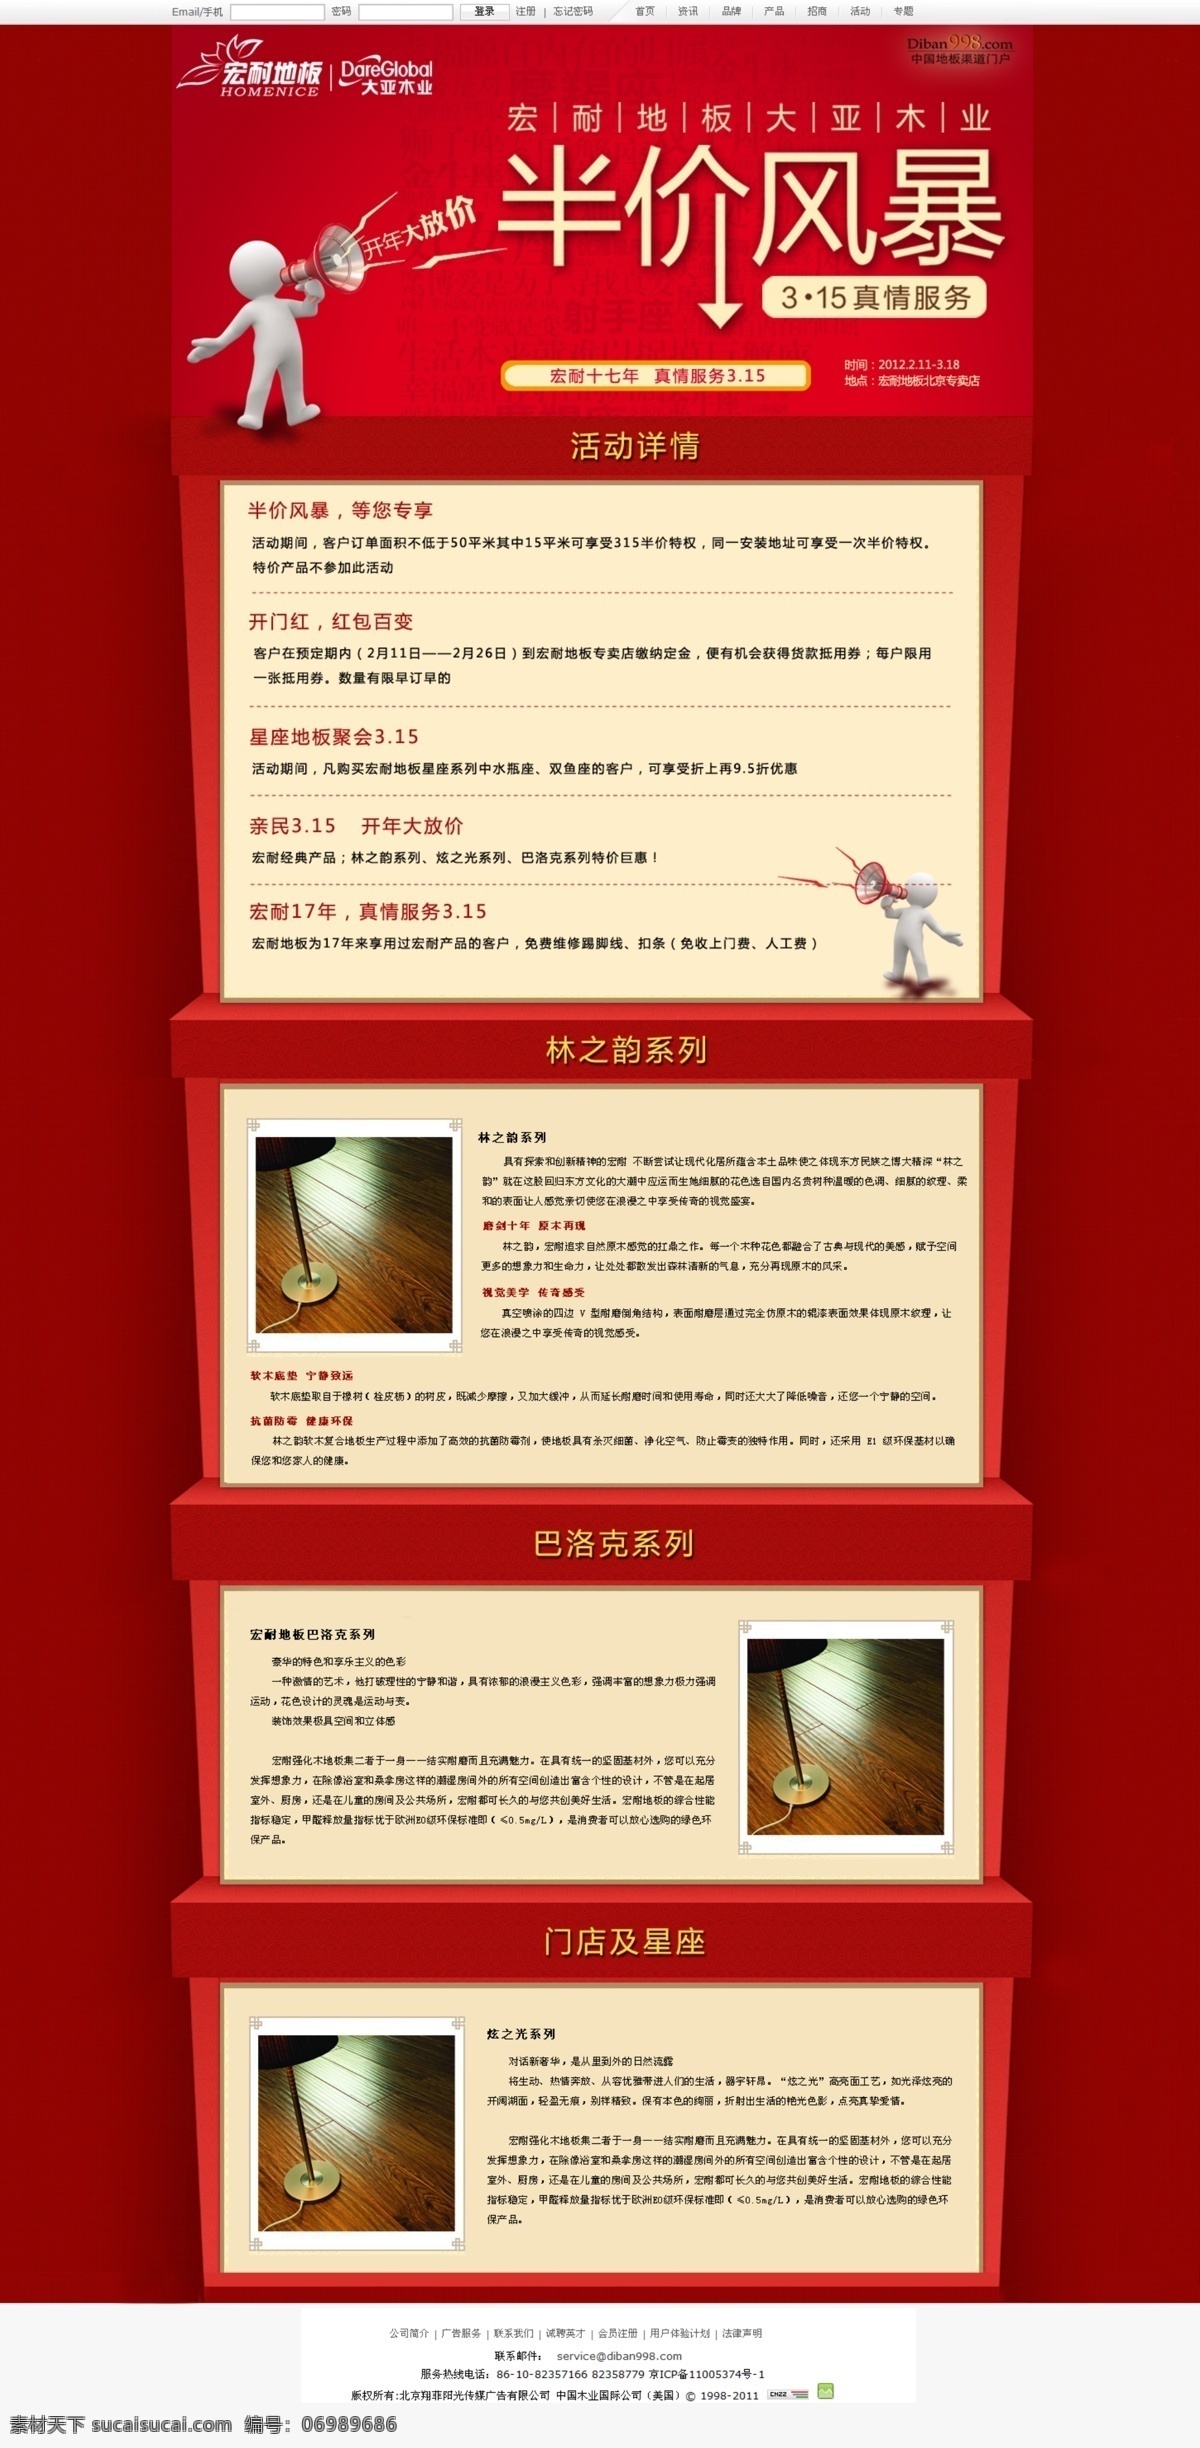 3免费下载 3d小人 红色 网页模板 源文件 中文模版 地板 活动 专题 15活动专题 宏耐地板 完美页面 家居装饰素材 室内设计